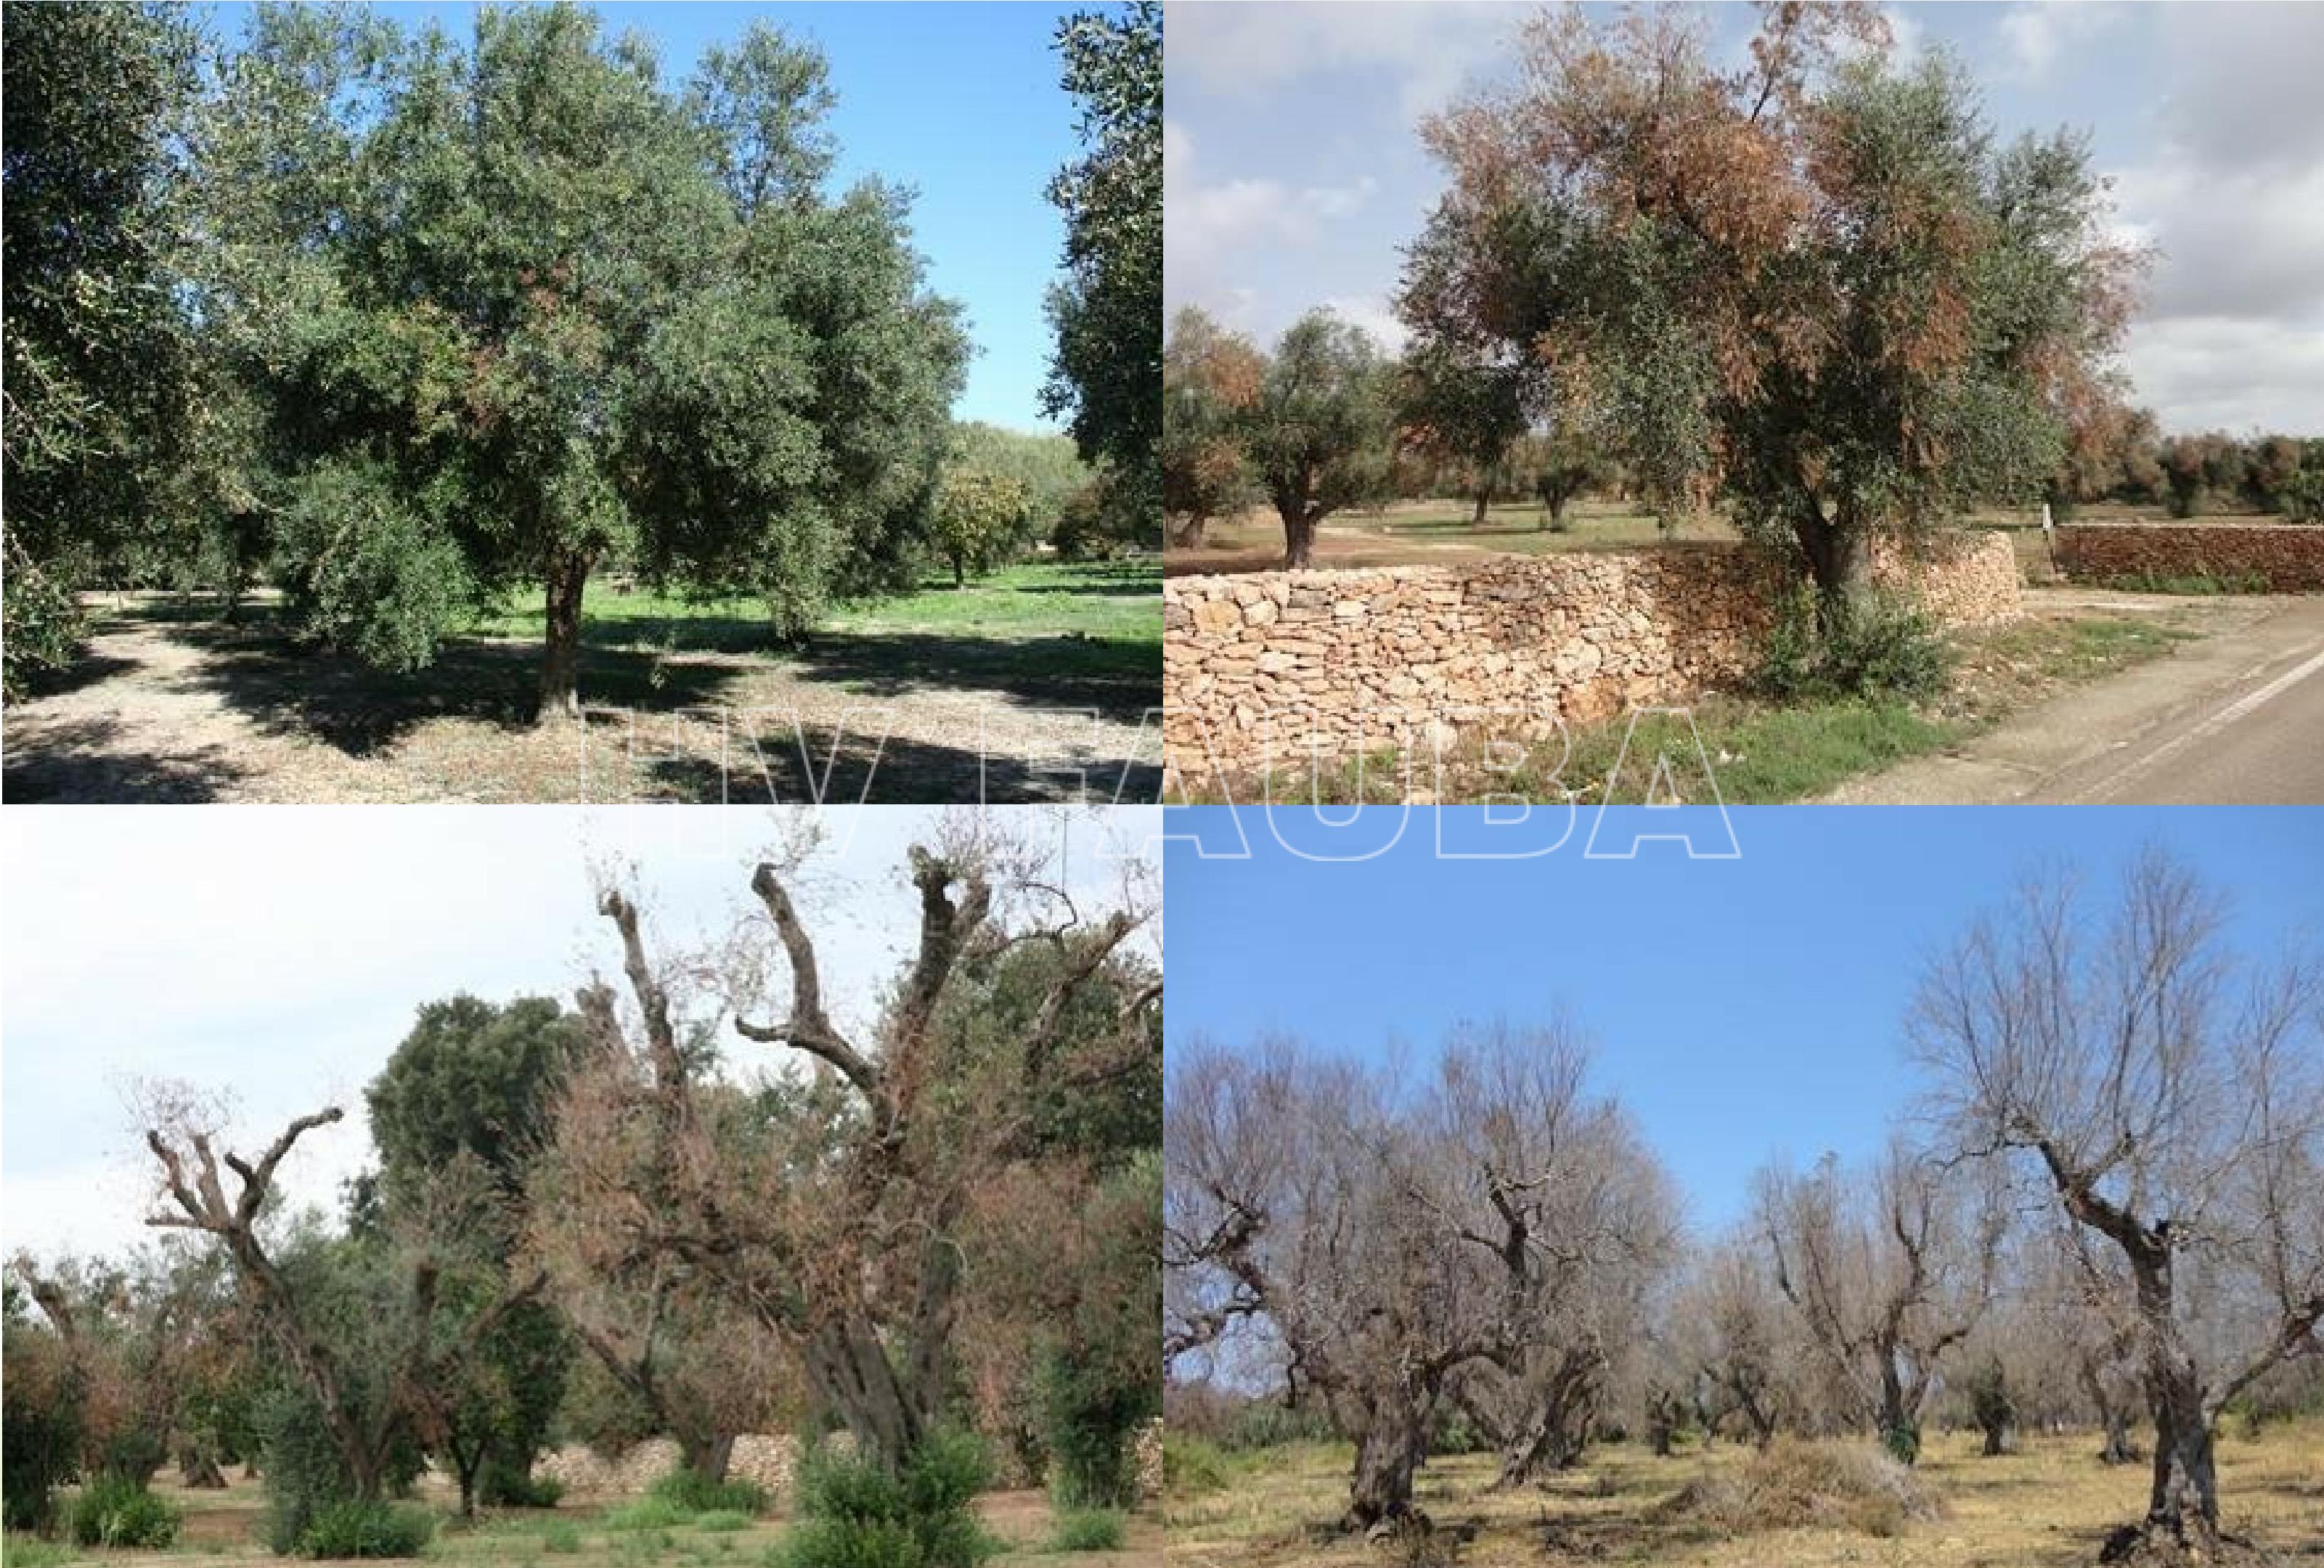 Evolución del síndrome del decaimiento rápido del olivo en el sur de Italia. Fuente: D. Boscia